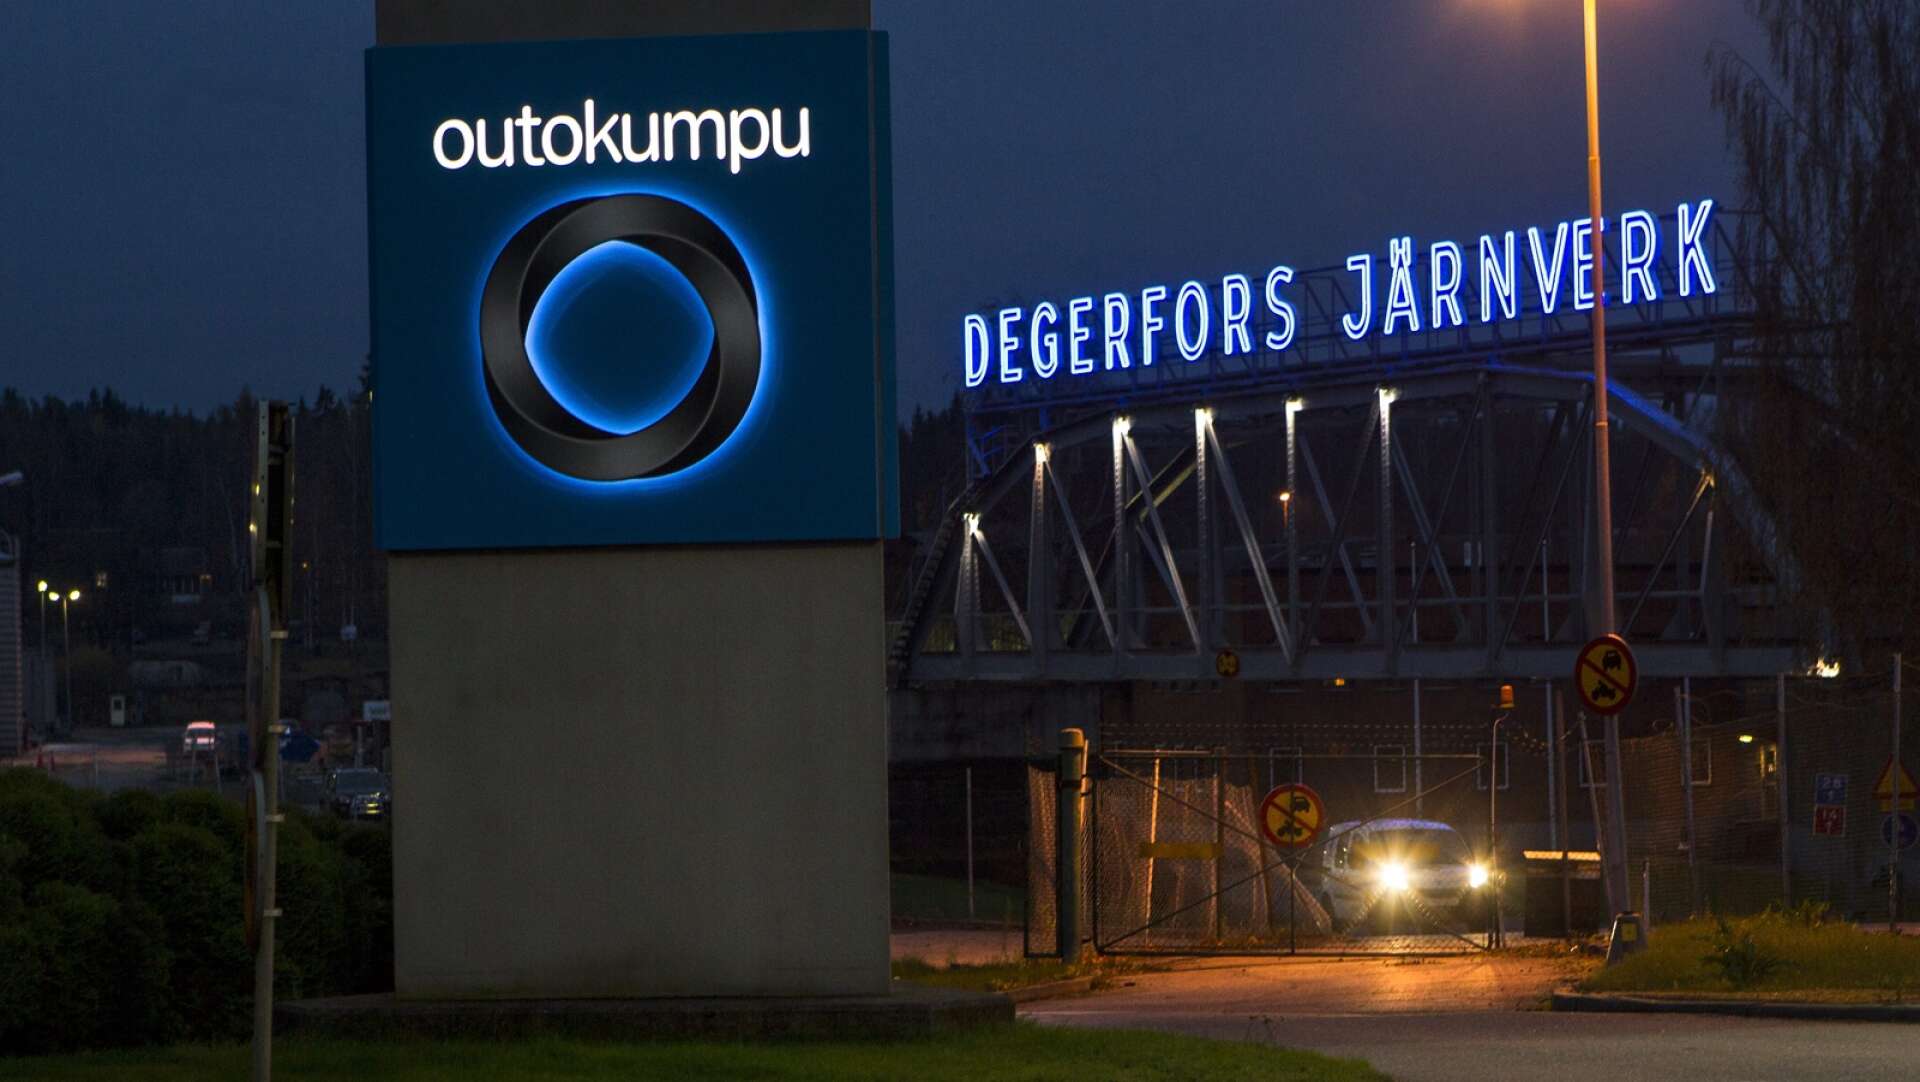 Outokumpus enhet långa produkter vid Järnverket i Degerfors ingår i det vändningsprogram som nu startas.